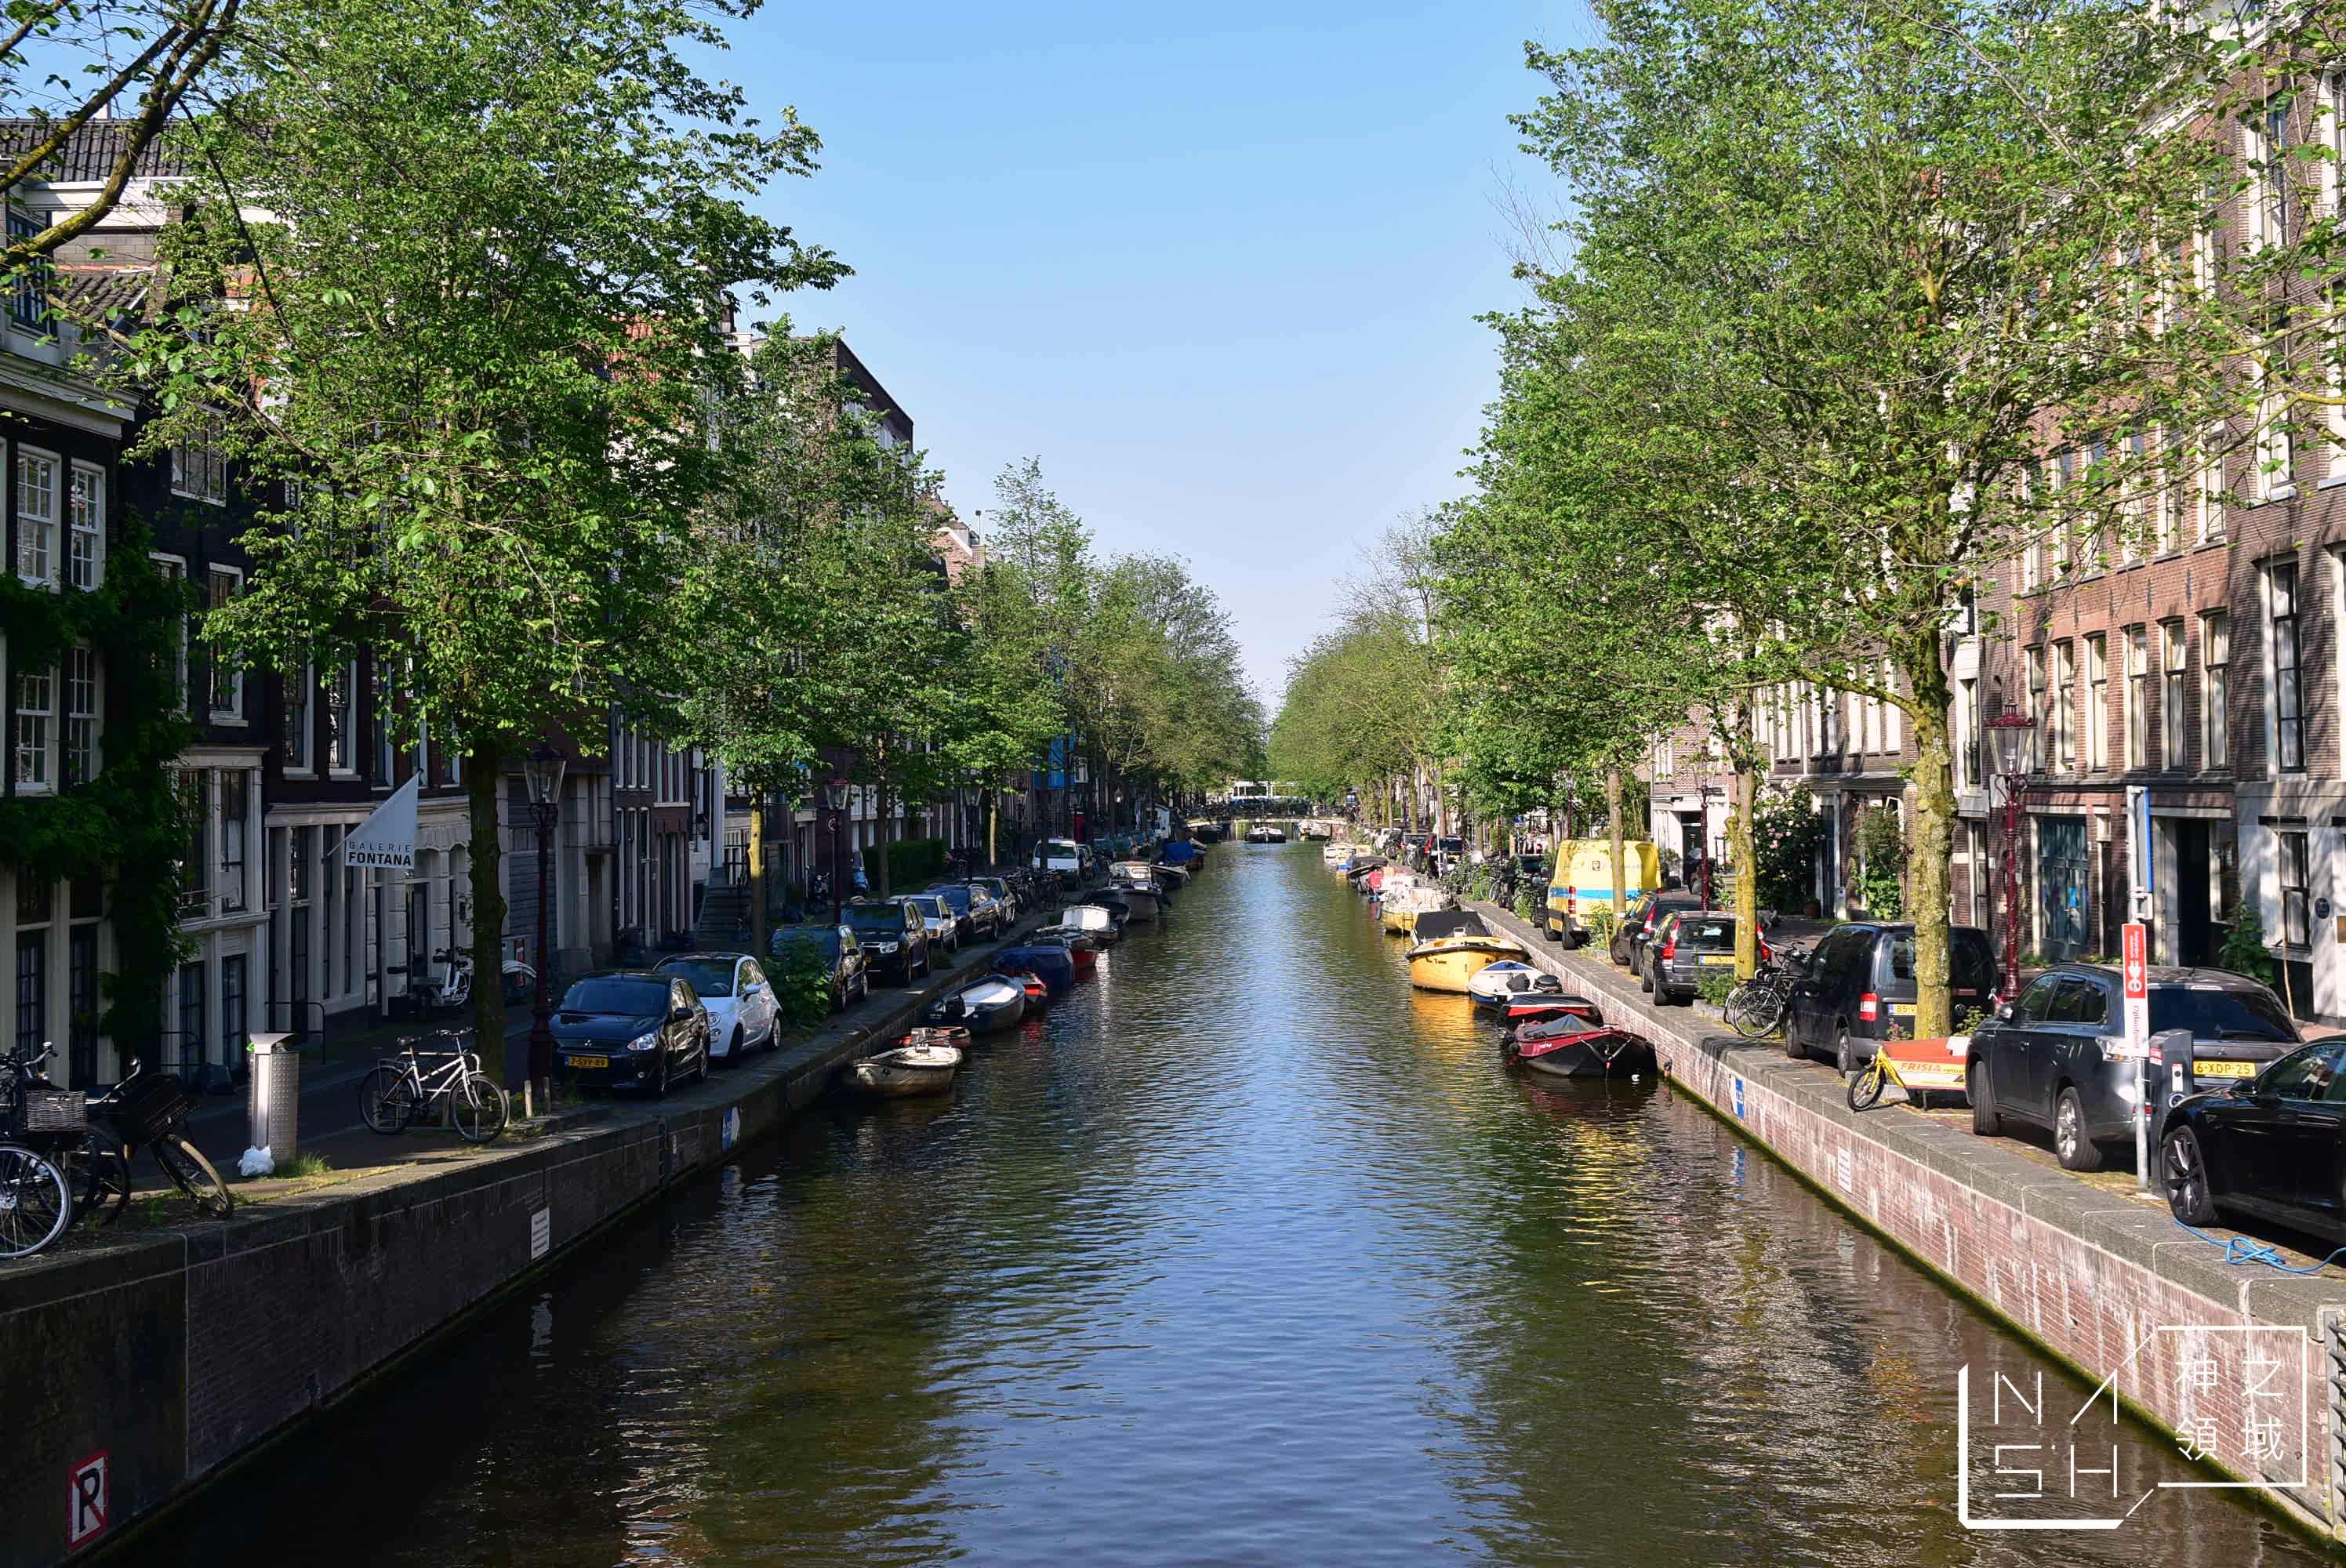 RIJKS Museum,阿姆斯特丹交通,阿姆斯特丹景點,阿姆斯特丹一日遊,荷蘭國家博物館